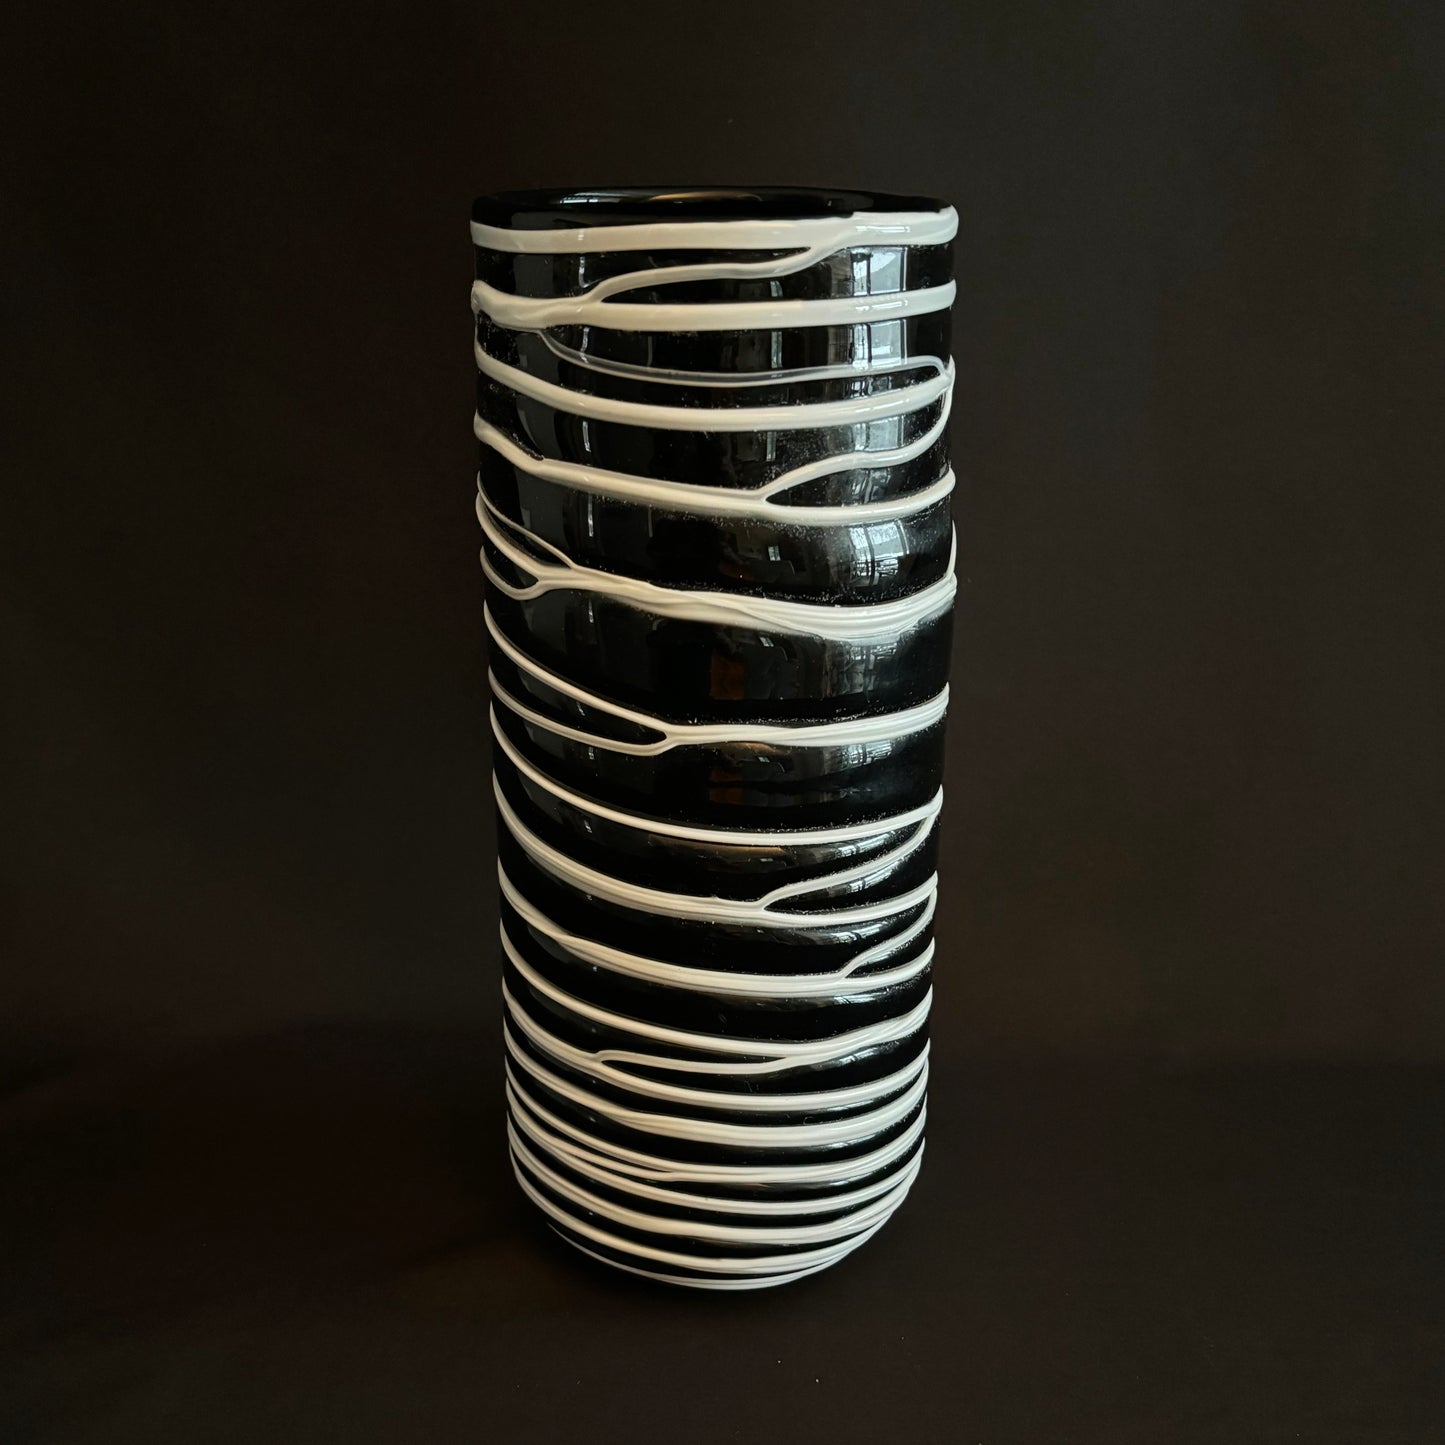 Black and White Art Glass Vase